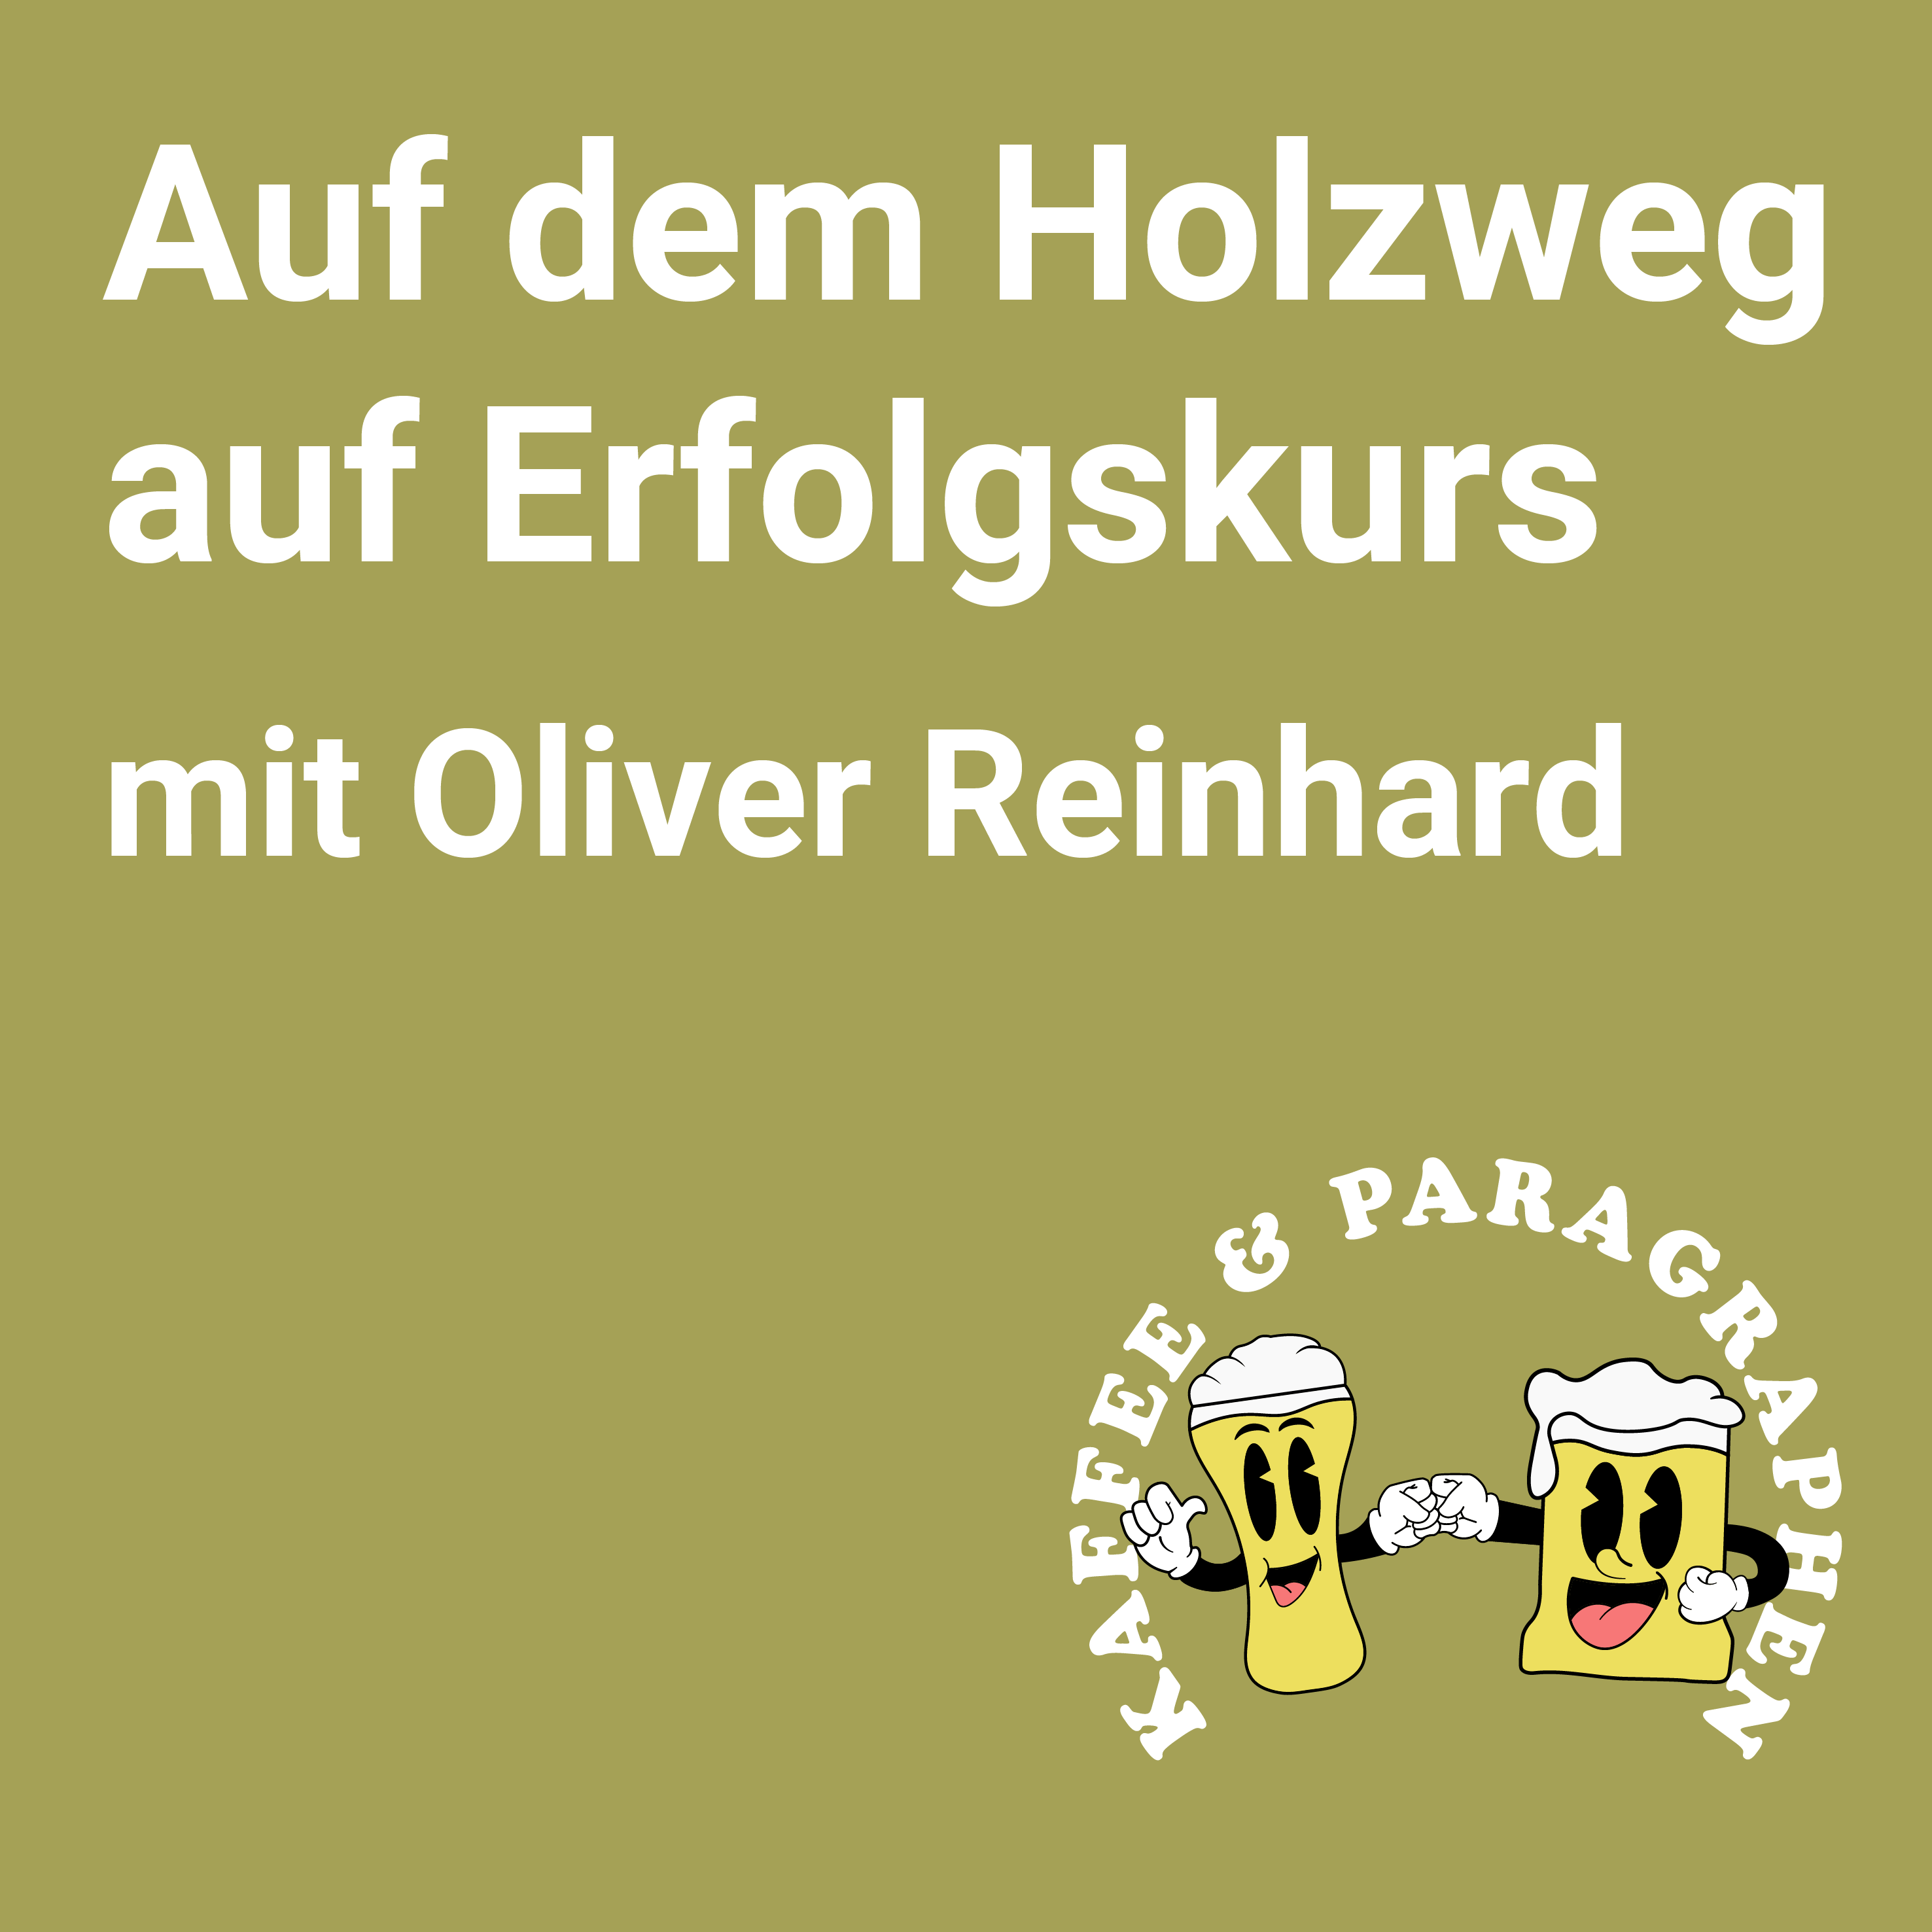 Auf dem Holzweg auf Erfolgskurs – mit Oliver Reinhard E-030